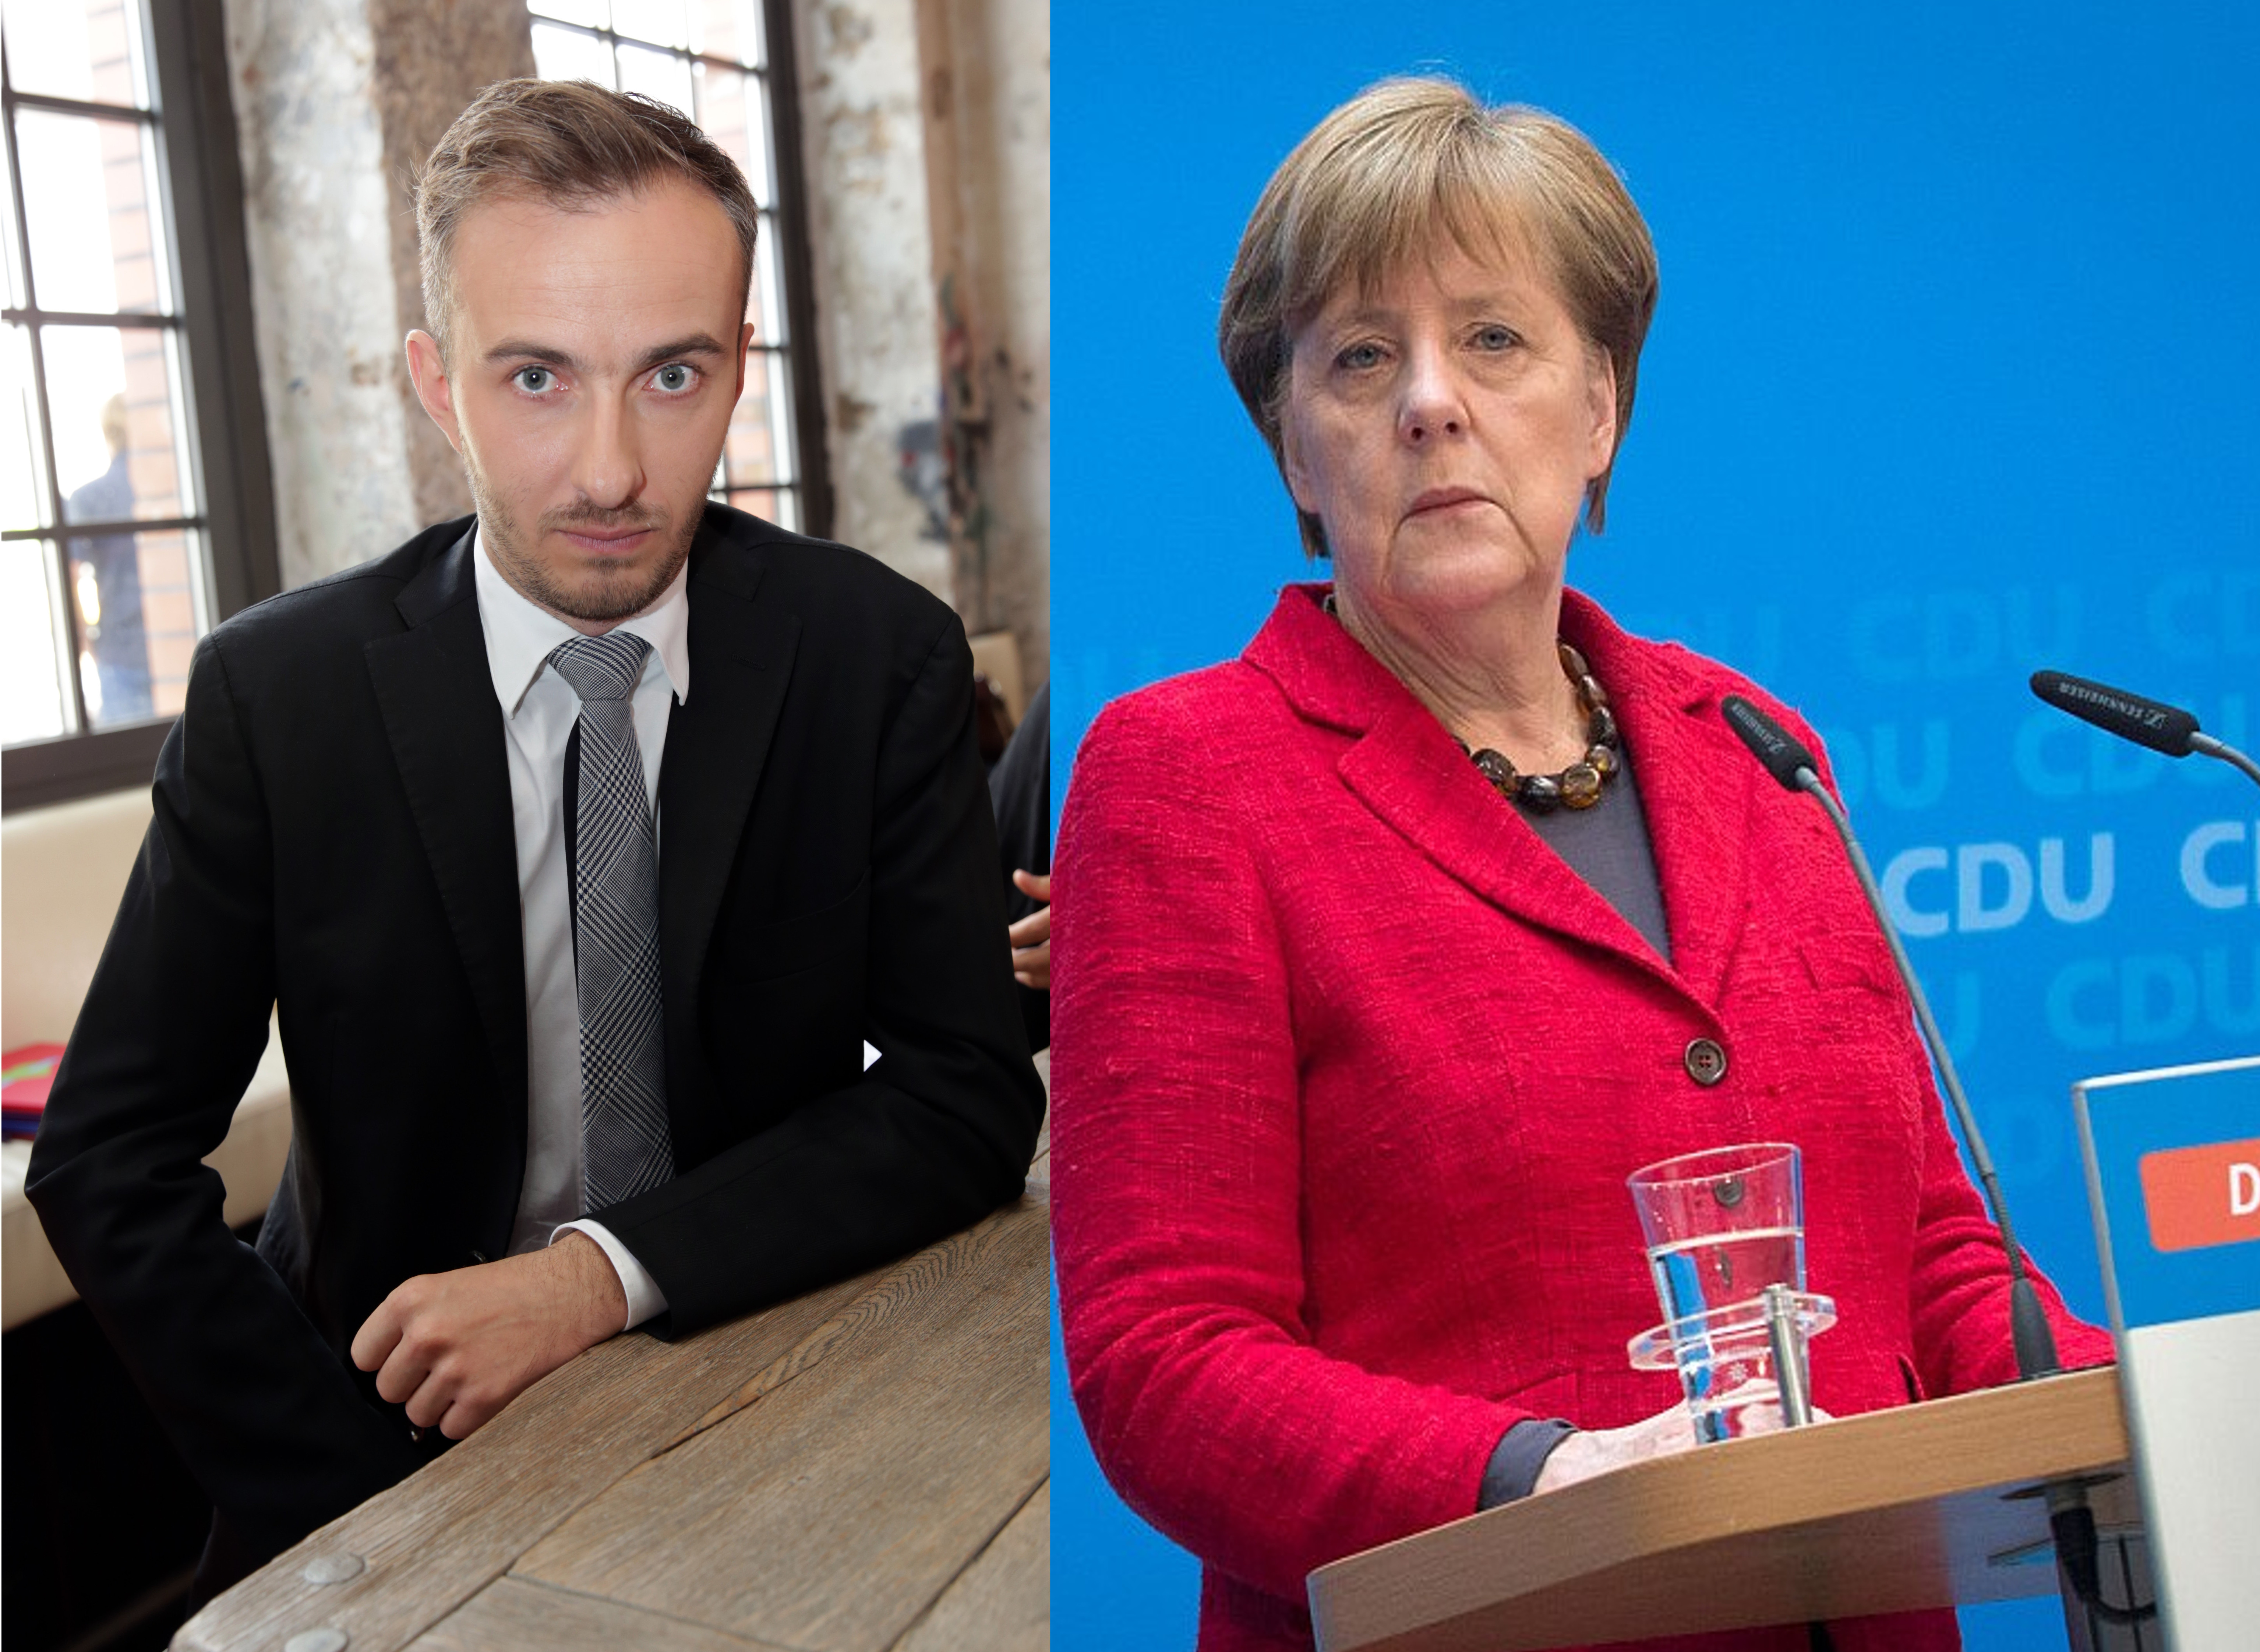 Begeht Merkel-Regierung Verfahrensfehler im Fall Böhmermann?